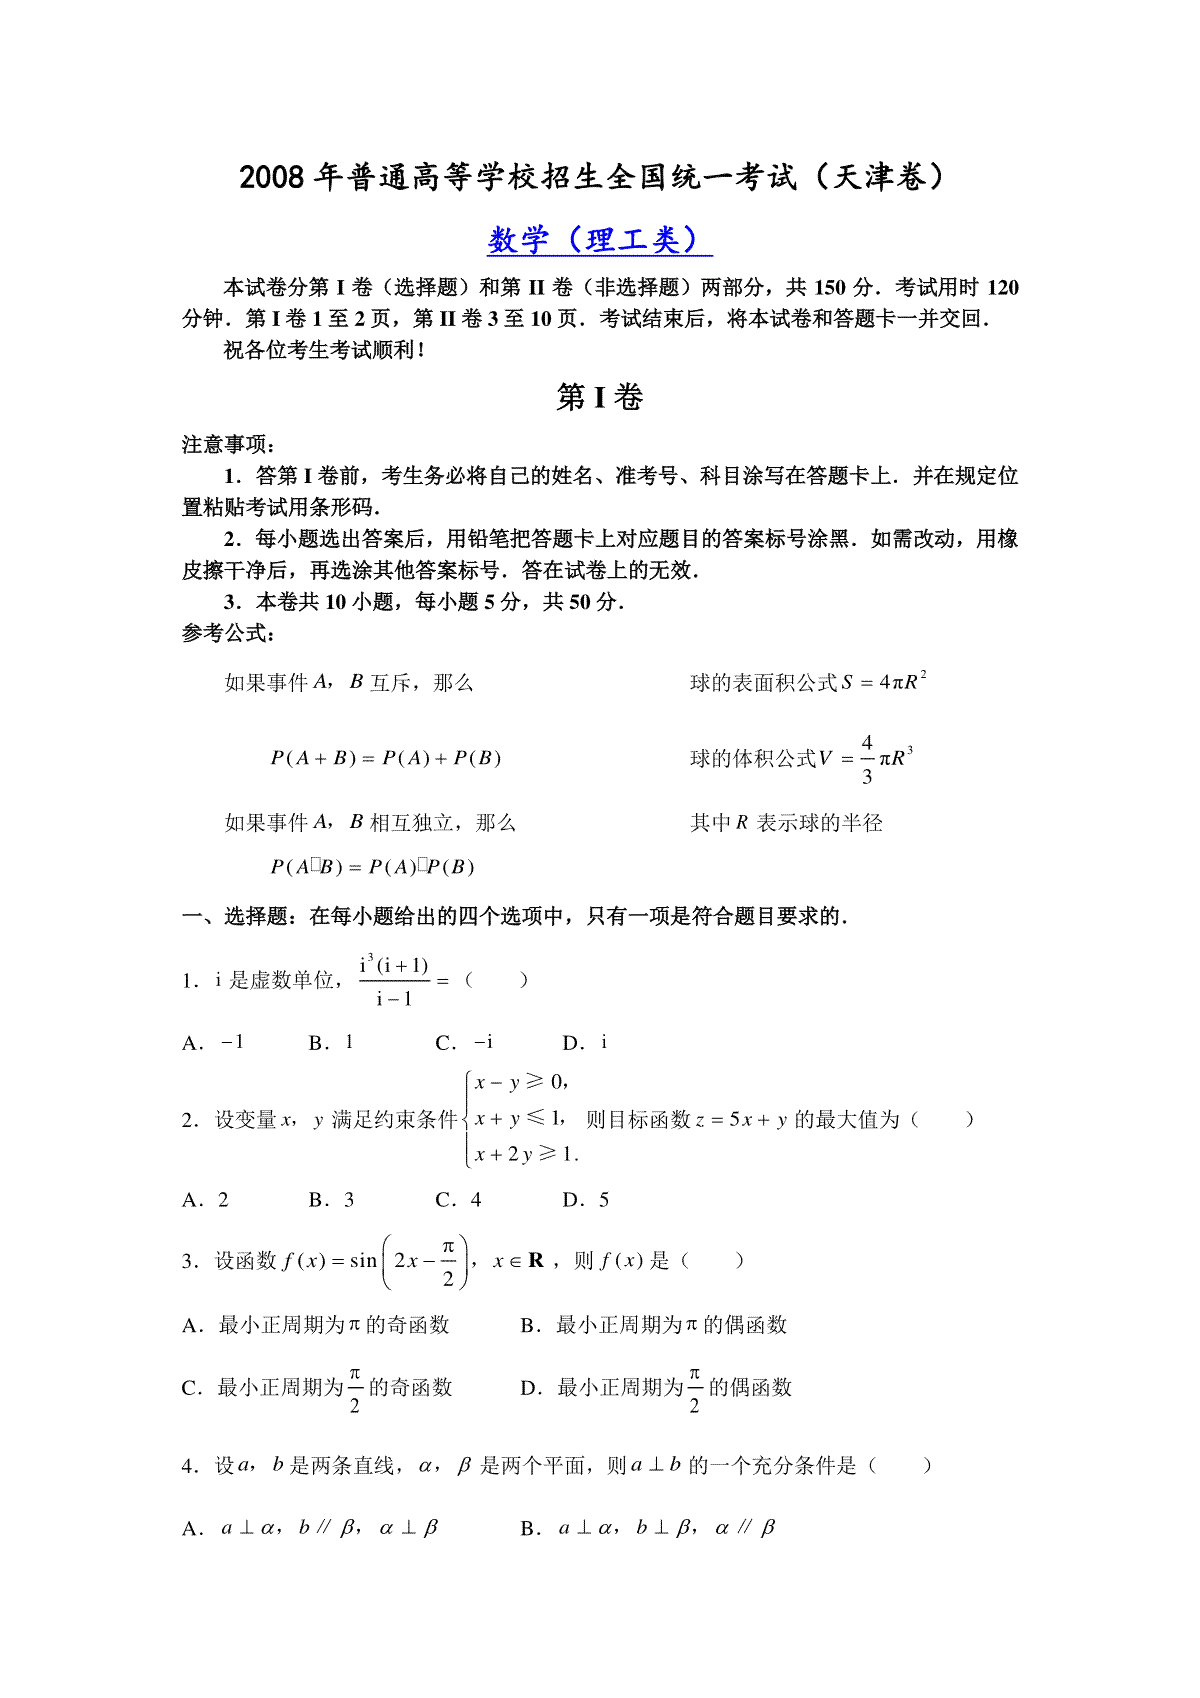 2008年高考理科数学试题(天津卷)及参考答案